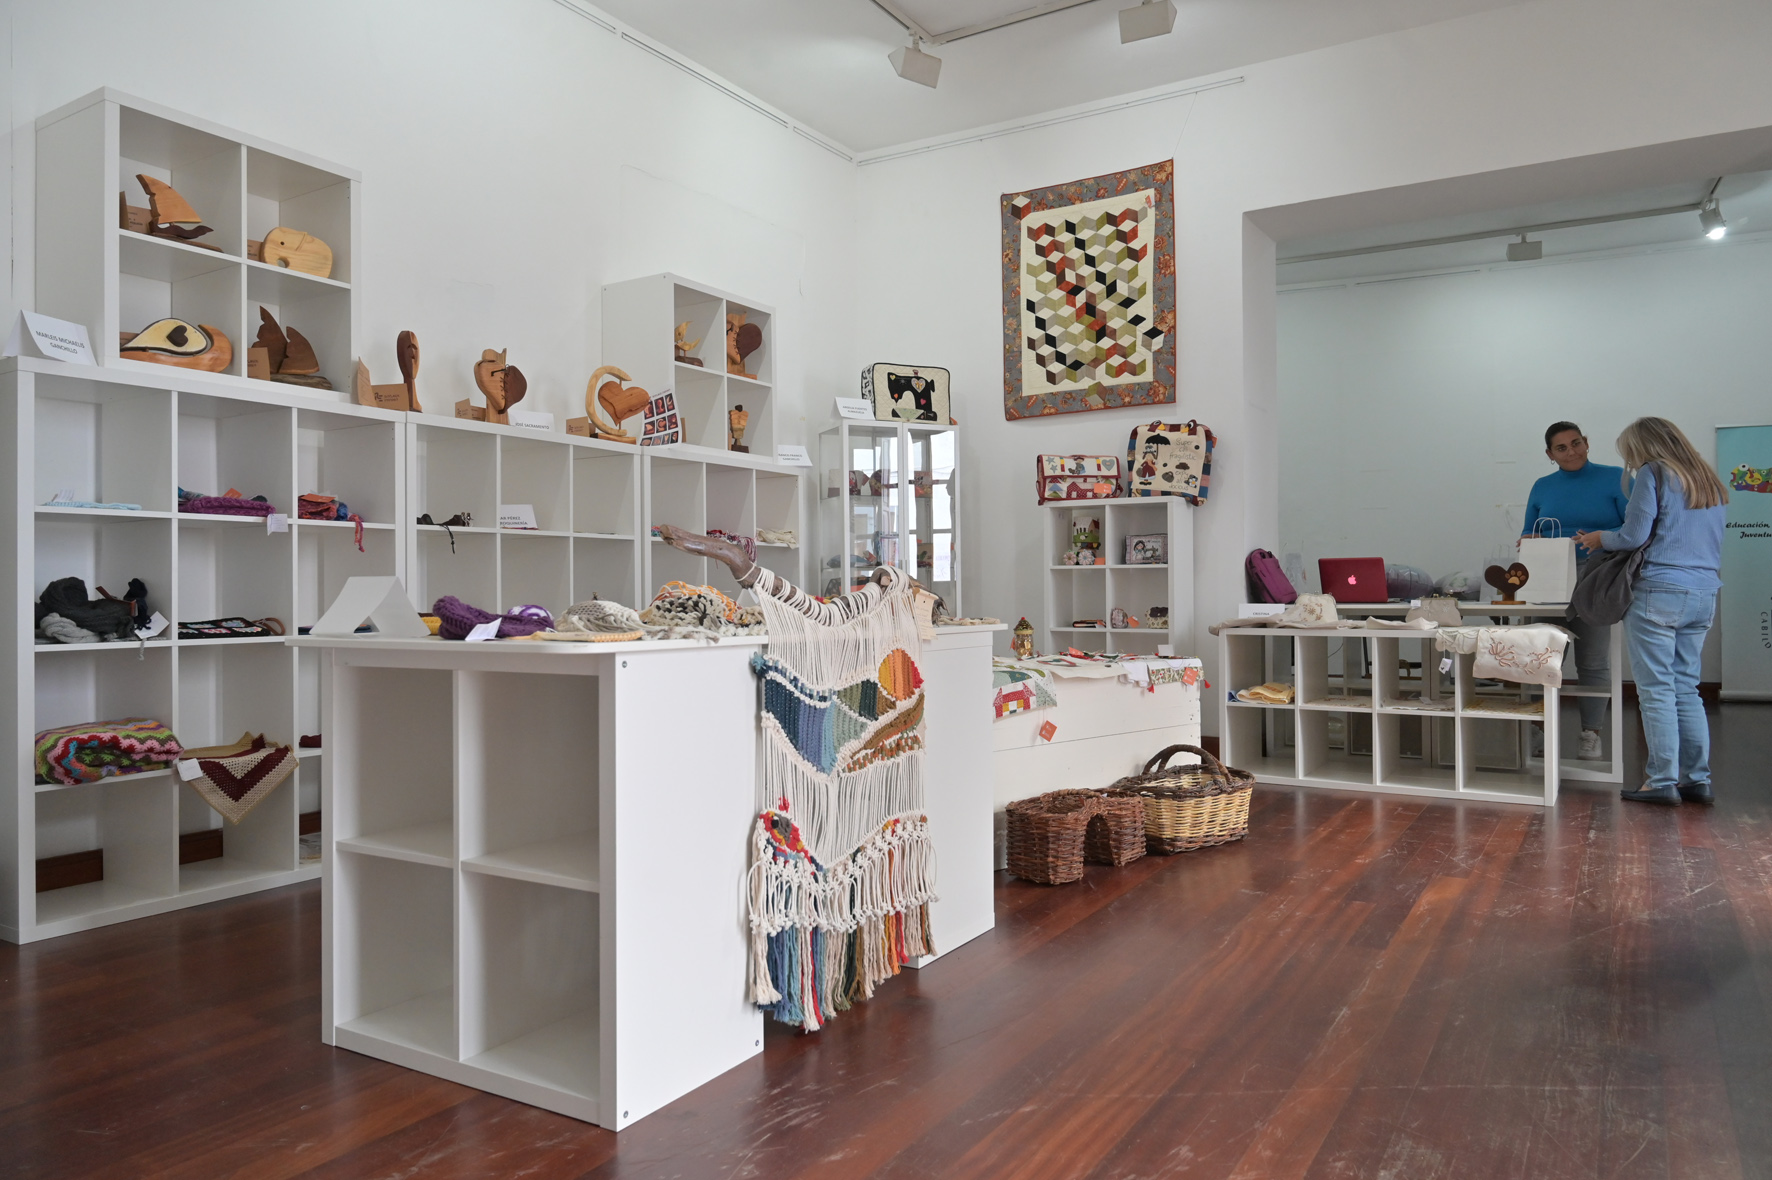 La Sala de Exposiciones del Cabildo acoge la Muestra de Artesanía Insular con trabajos de 18 artesanos de la isla